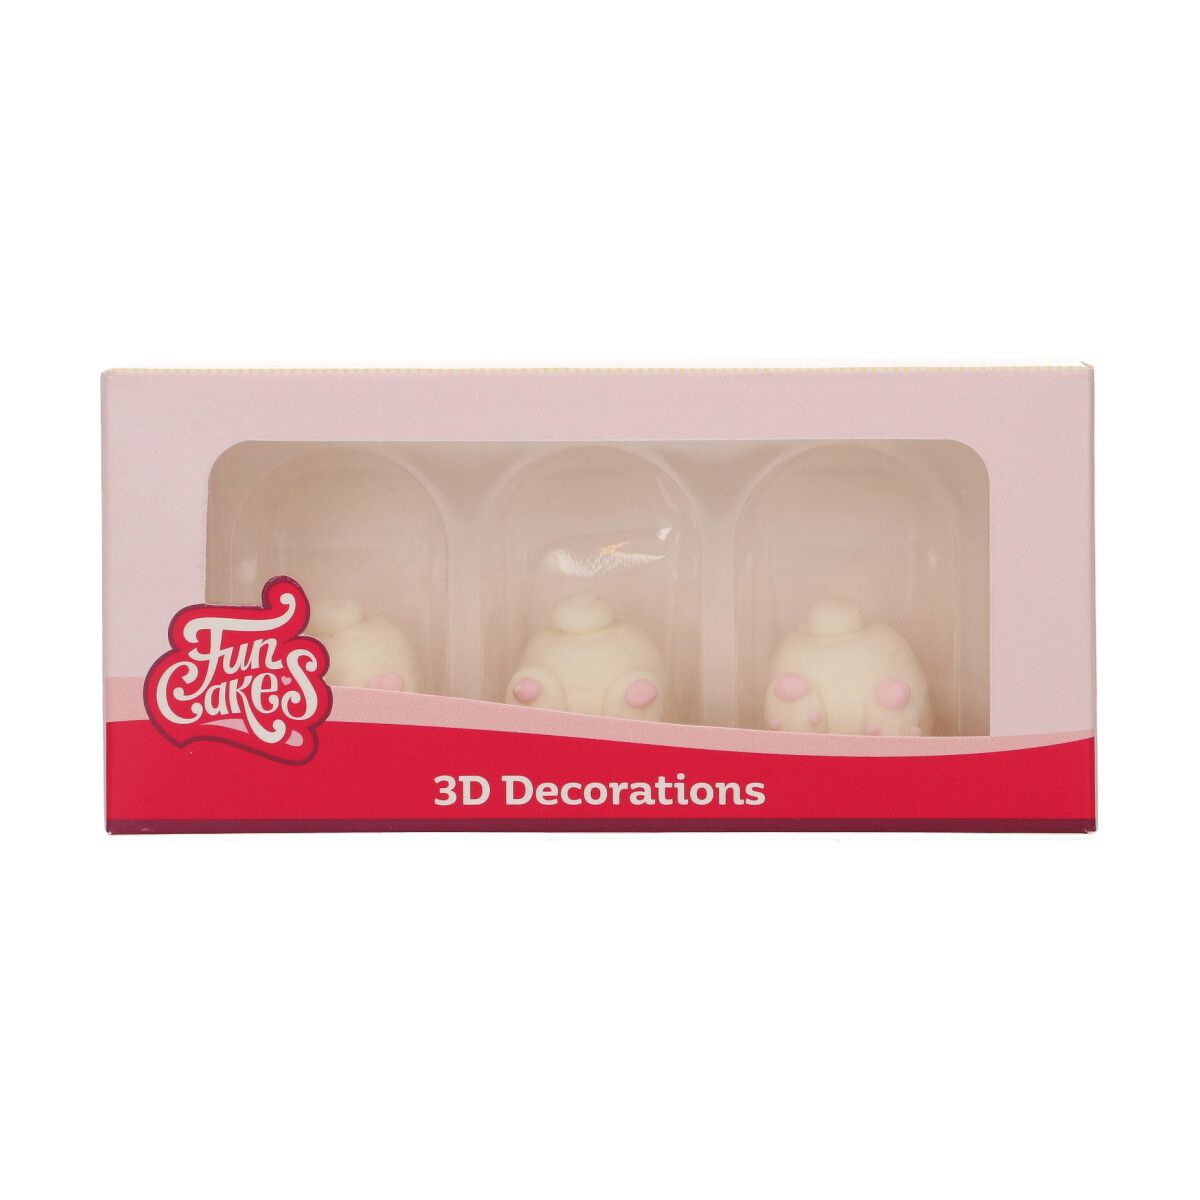 FC Sockerdekorationer 3D - Bunny Butts